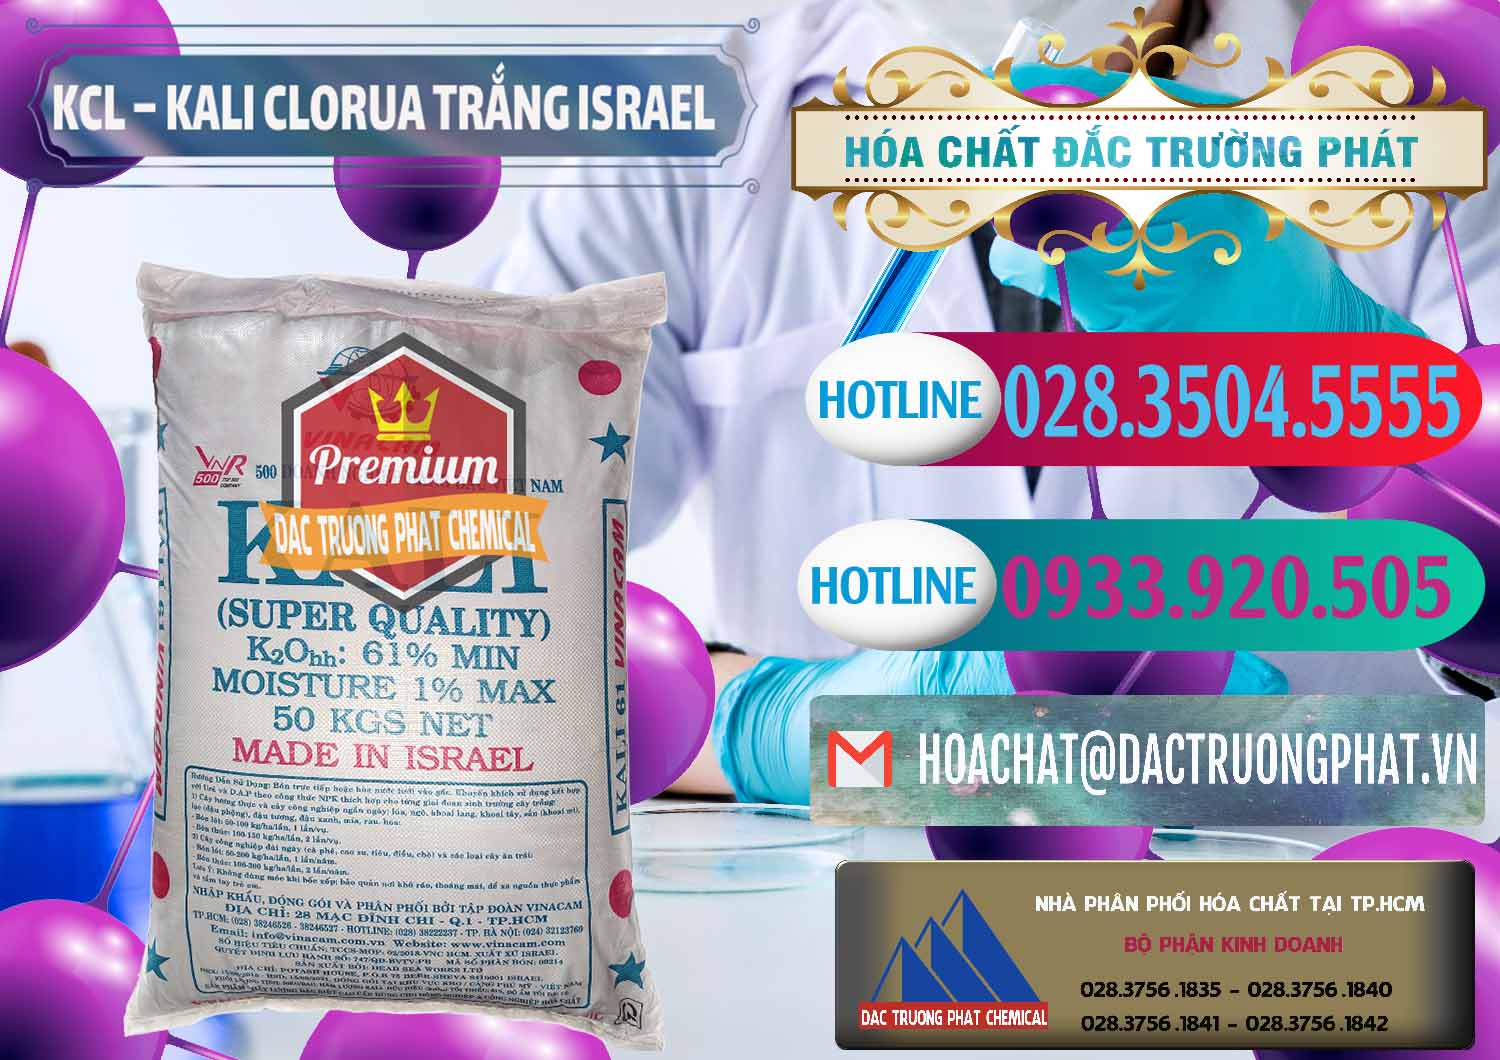 Cty nhập khẩu & bán KCL – Kali Clorua Trắng Israel - 0087 - Nơi chuyên cung cấp và kinh doanh hóa chất tại TP.HCM - truongphat.vn